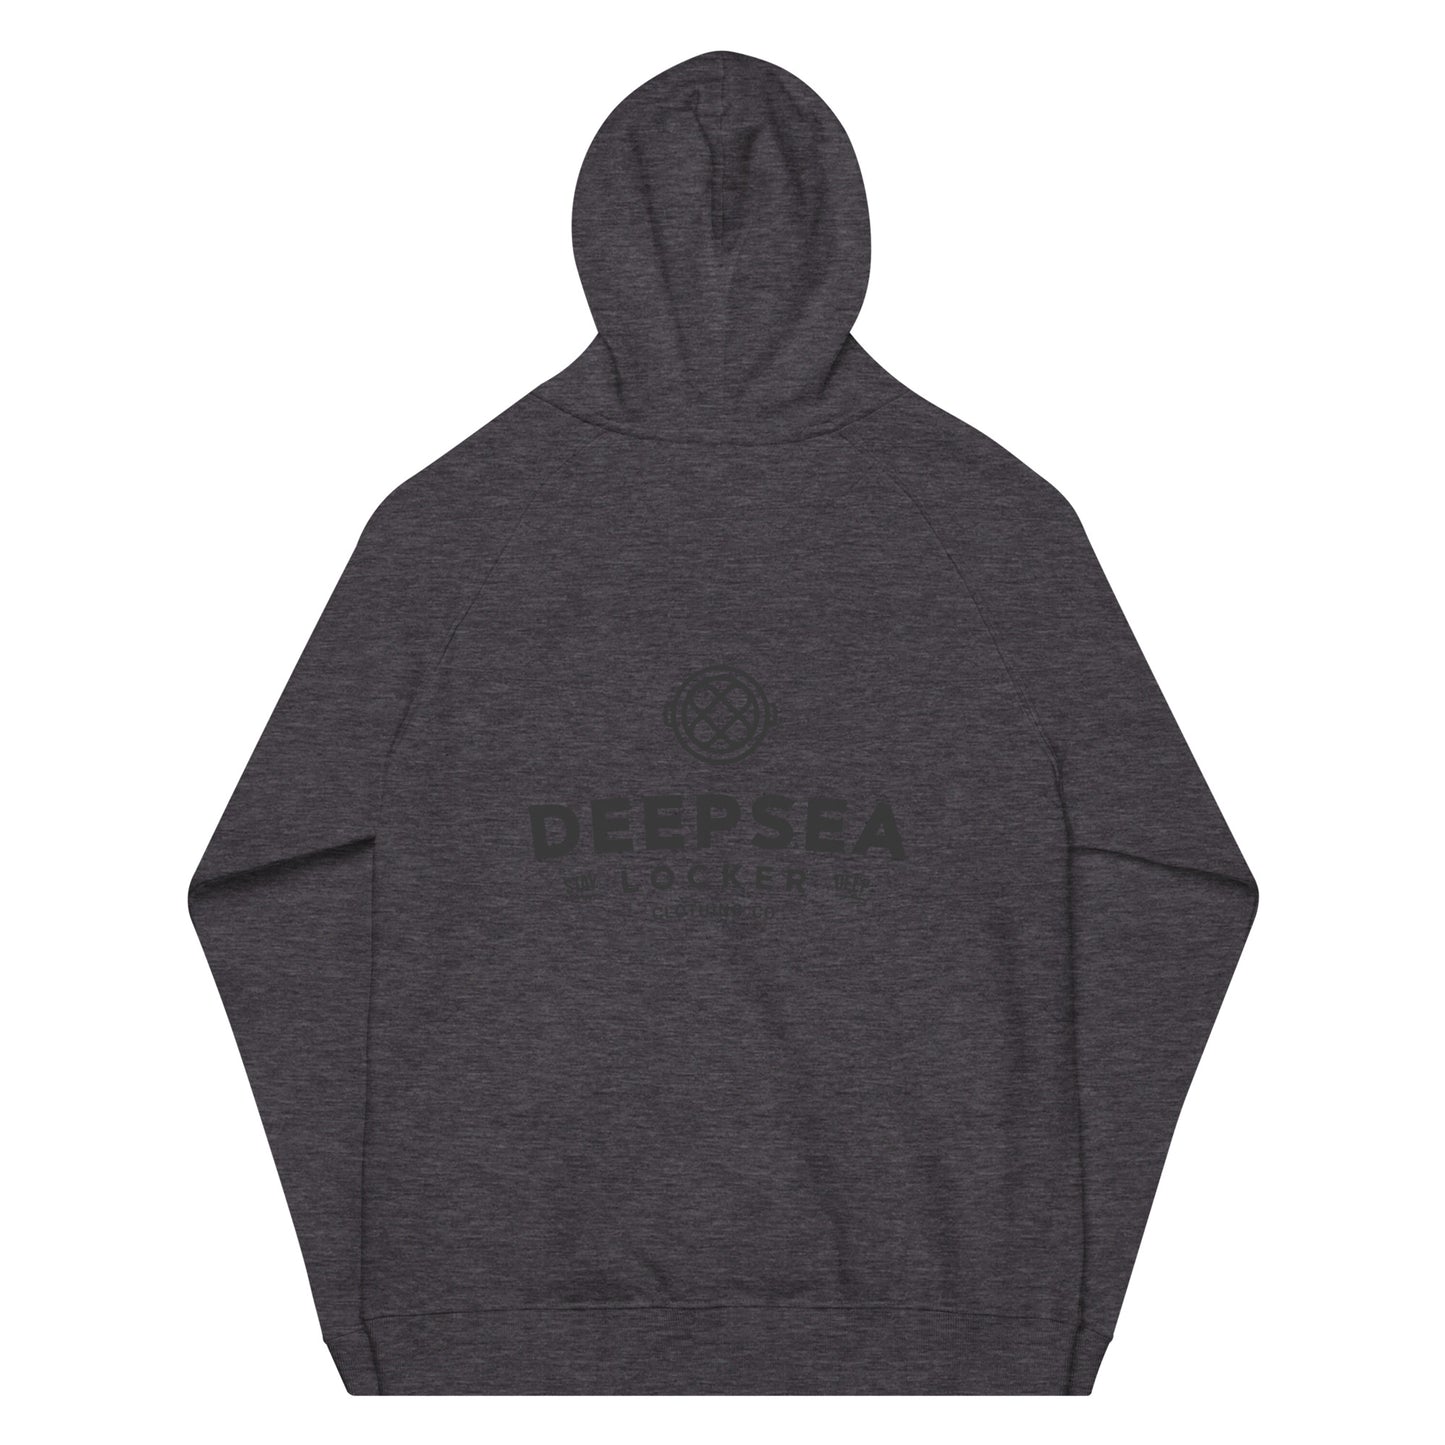 DEEPSEA Locker / Night OPS hoodie